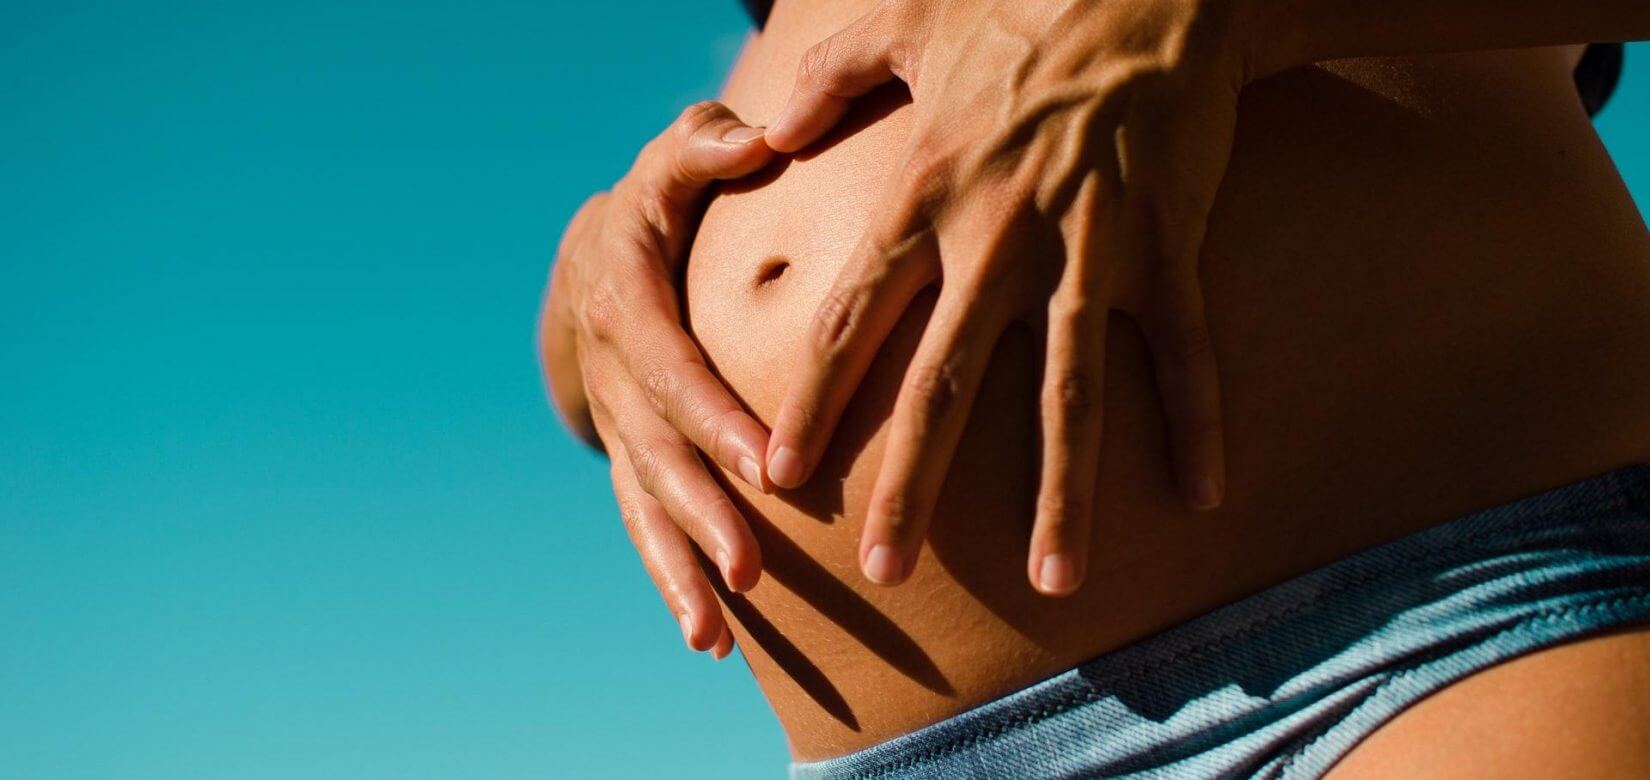 Εγκυμοσύνη το καλοκαίρι; 10 διατροφικά tips που θα σας χρειαστούν!